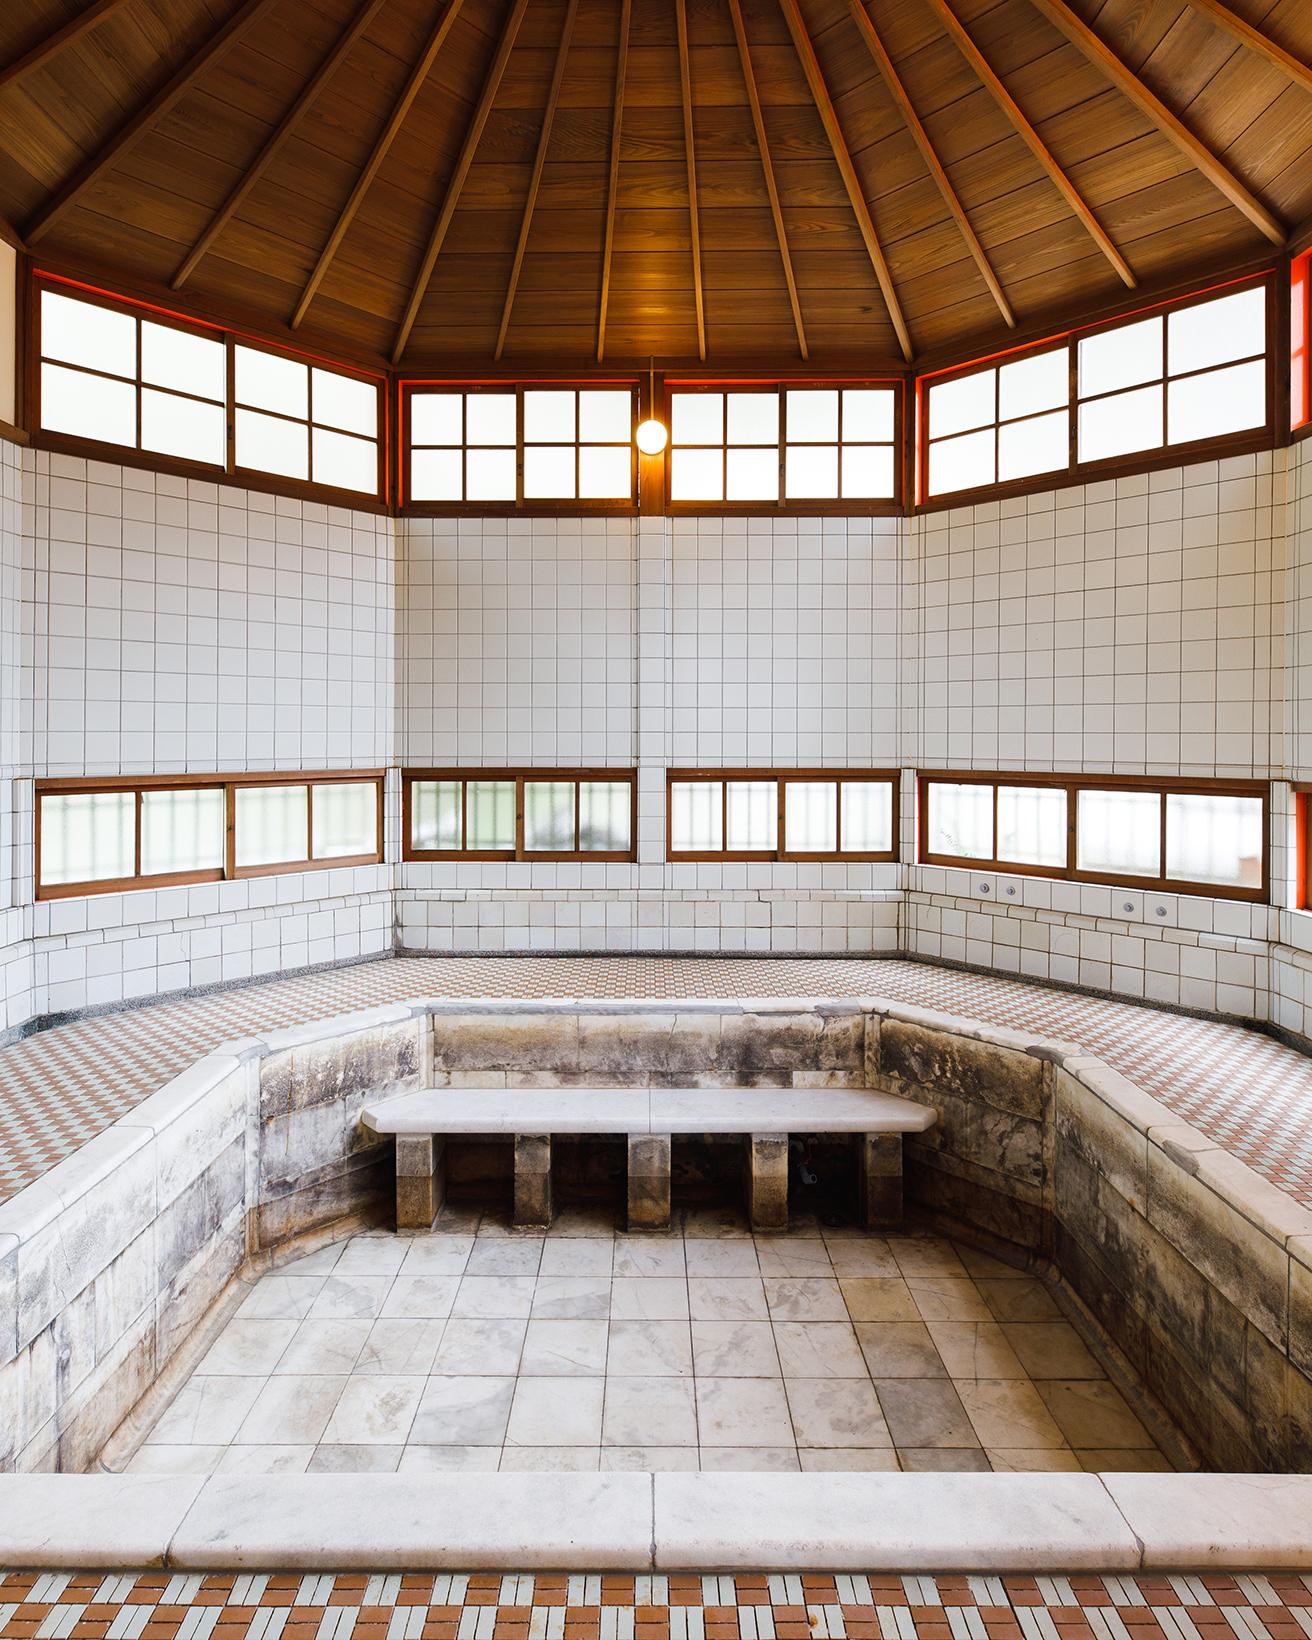 新館にある「五銭湯浴室」。天井の湯気抜き塔は不等辺八角形で独特の雰囲気が。また、浴場内のタイルには有田焼が使われている。